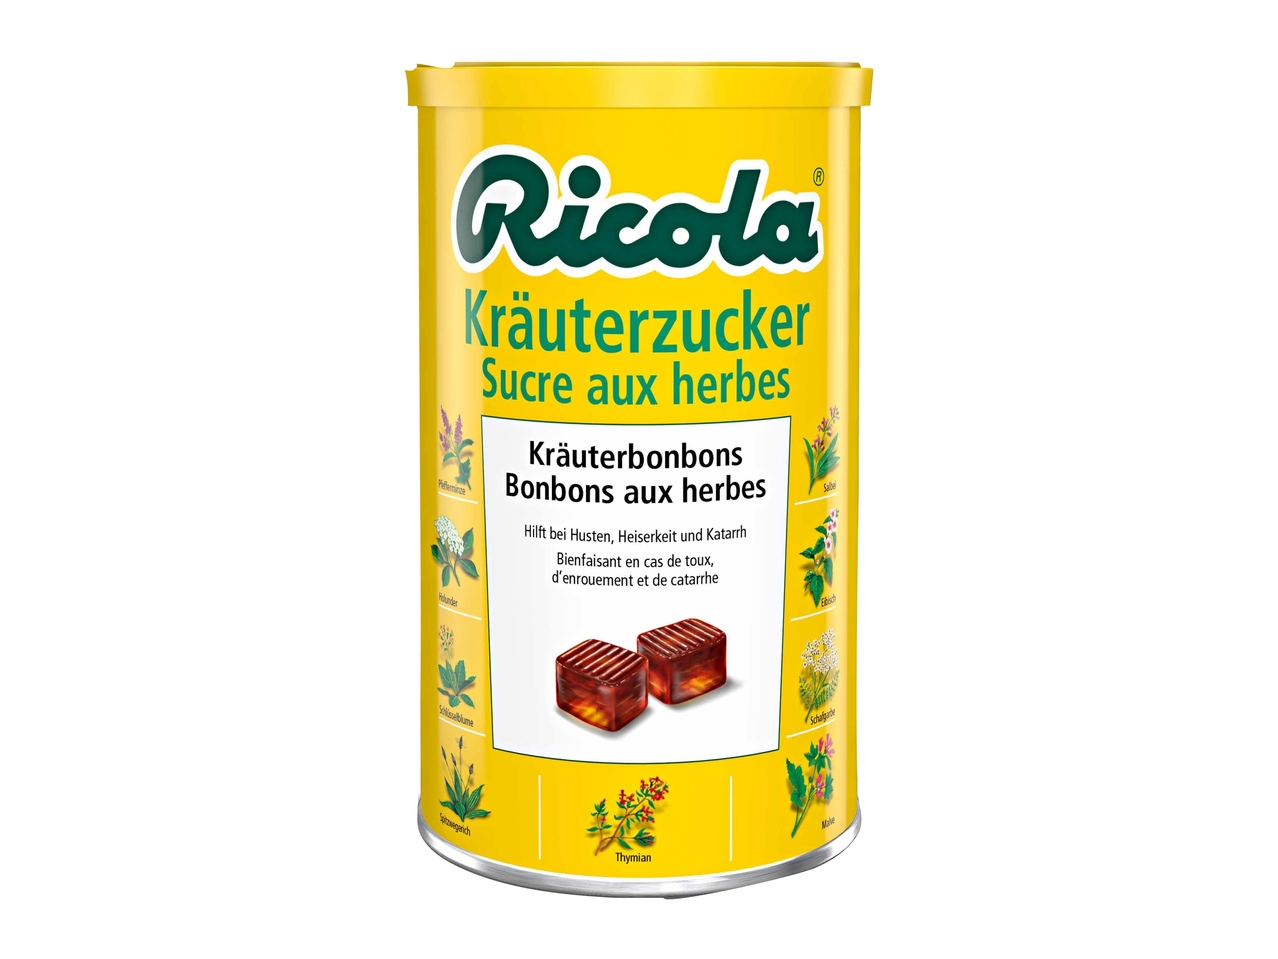 Ricola Kräuterzucker